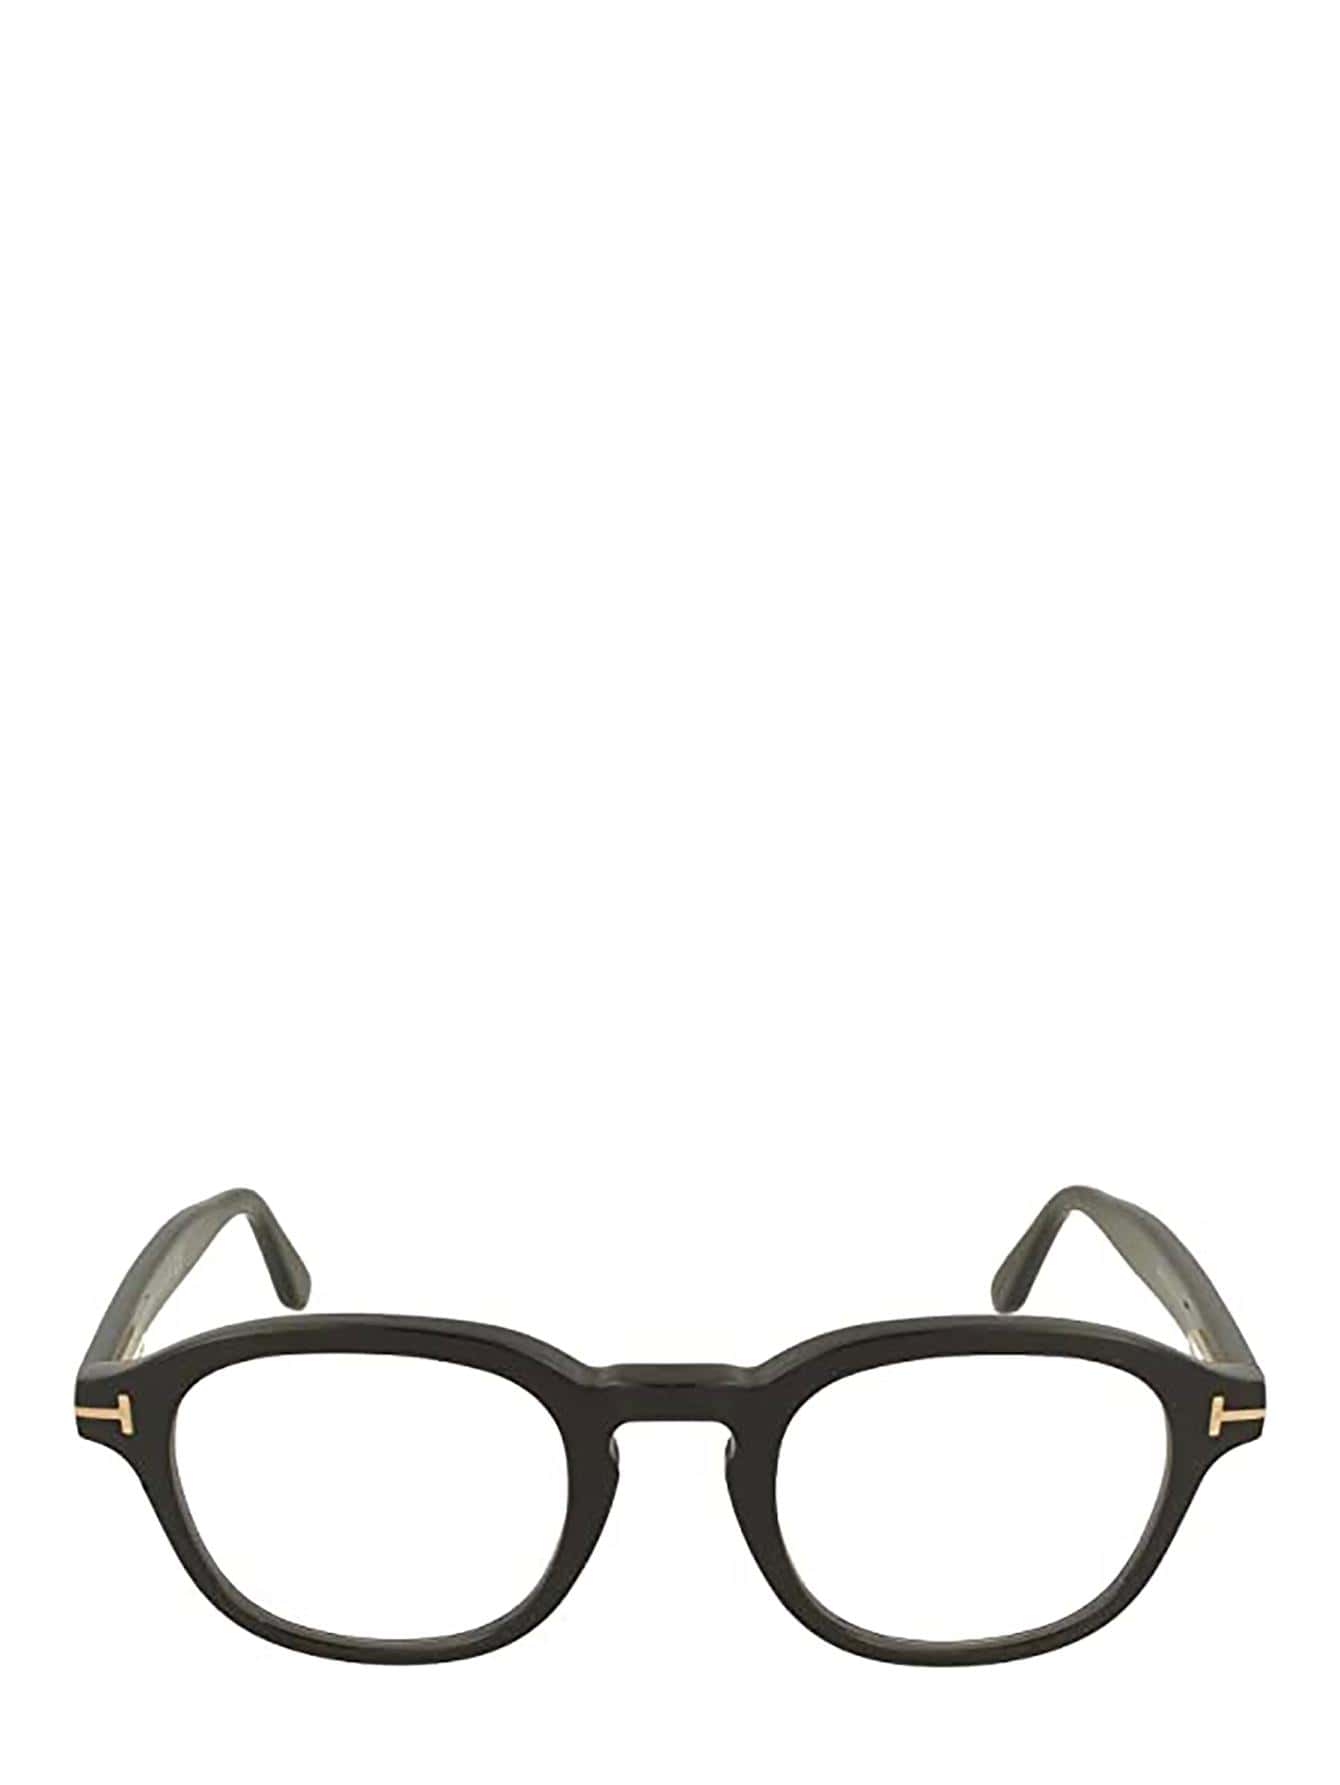 Мужские солнцезащитные очки Tom Ford ЧЕРНЫЕ FT5698B001, черный круглые синие солнцезащитные очки havana tom ford коричневый